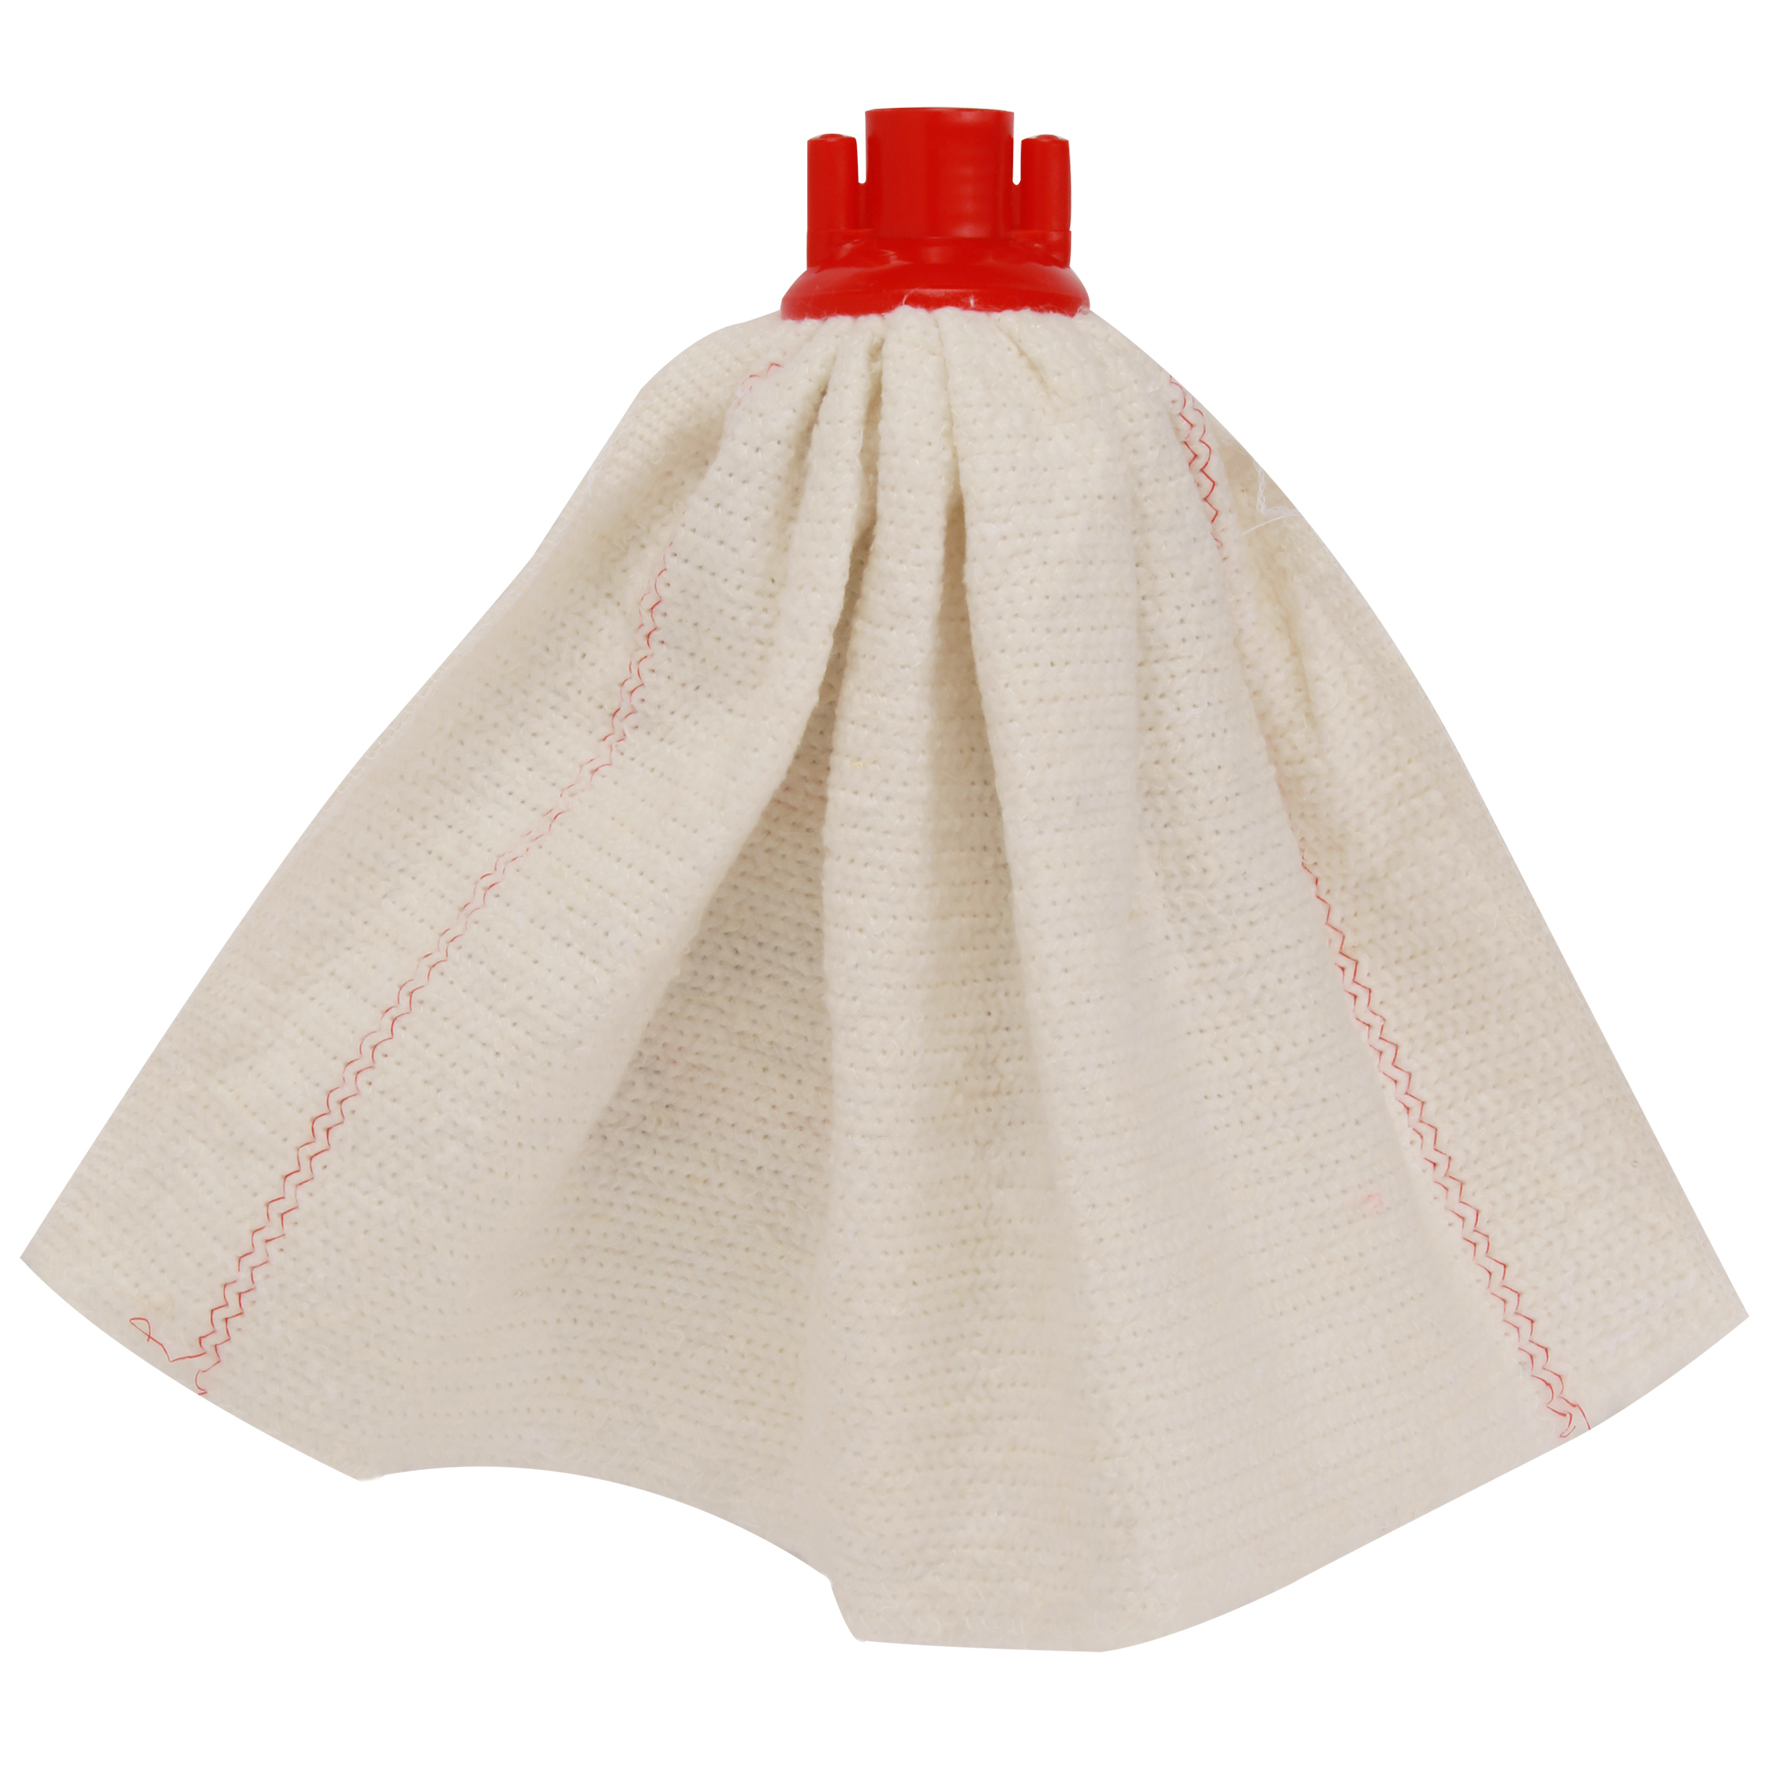 Σφουγγαρίστρα οικιακή φούστα σε λευκό χρώμα κατασκευασµένη από 100% βαµβάκι